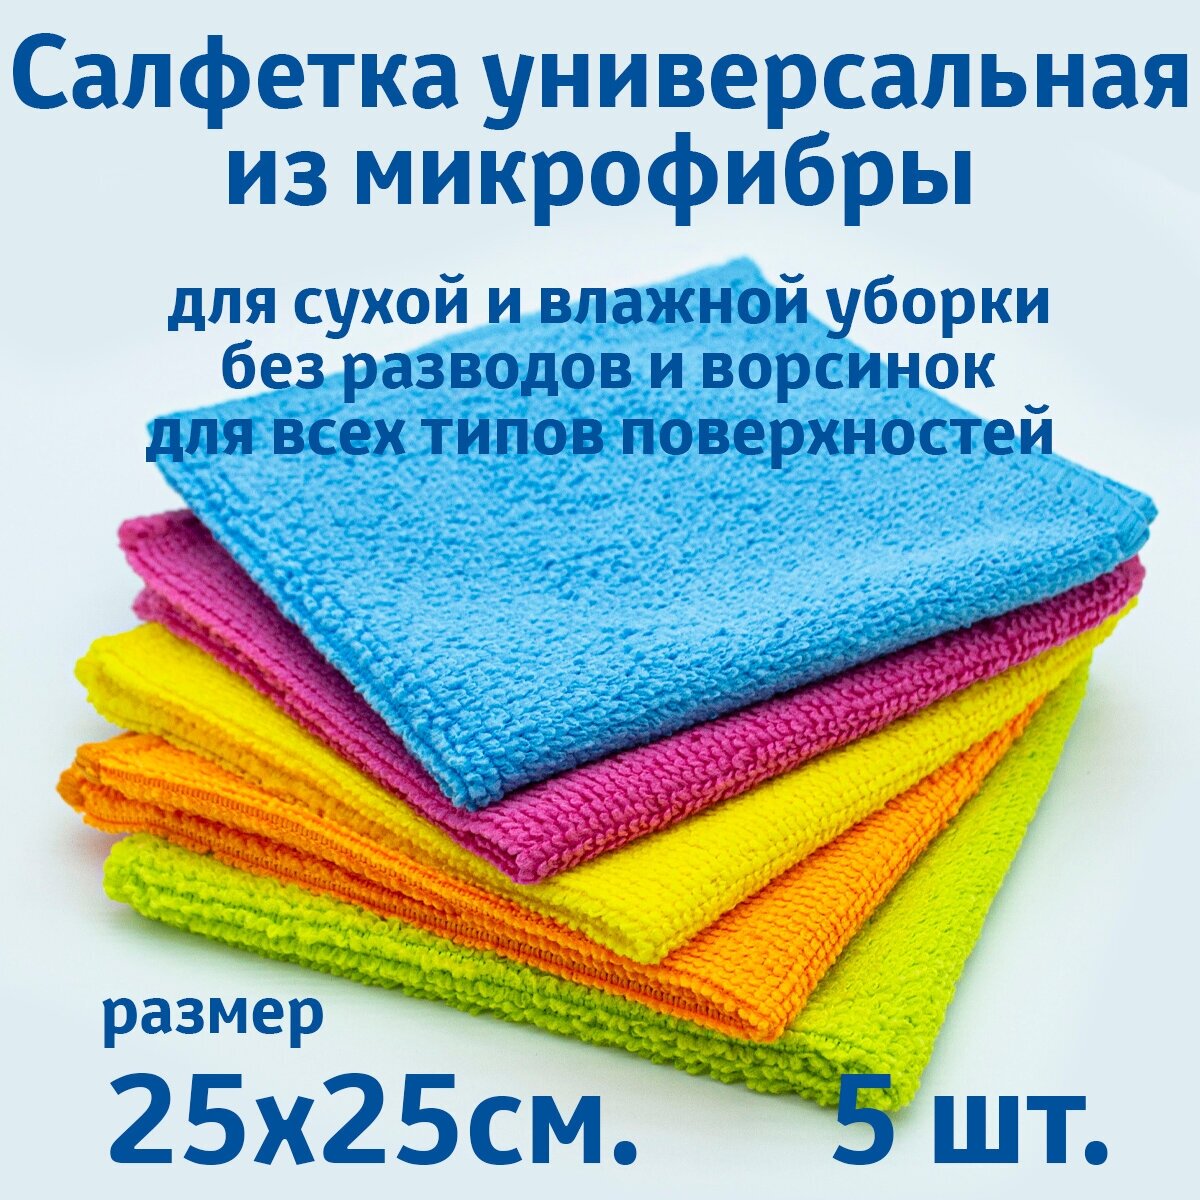 Салфетки для уборки из микрофибры универсальные 5 шт. в упаковке размер 25х25см.